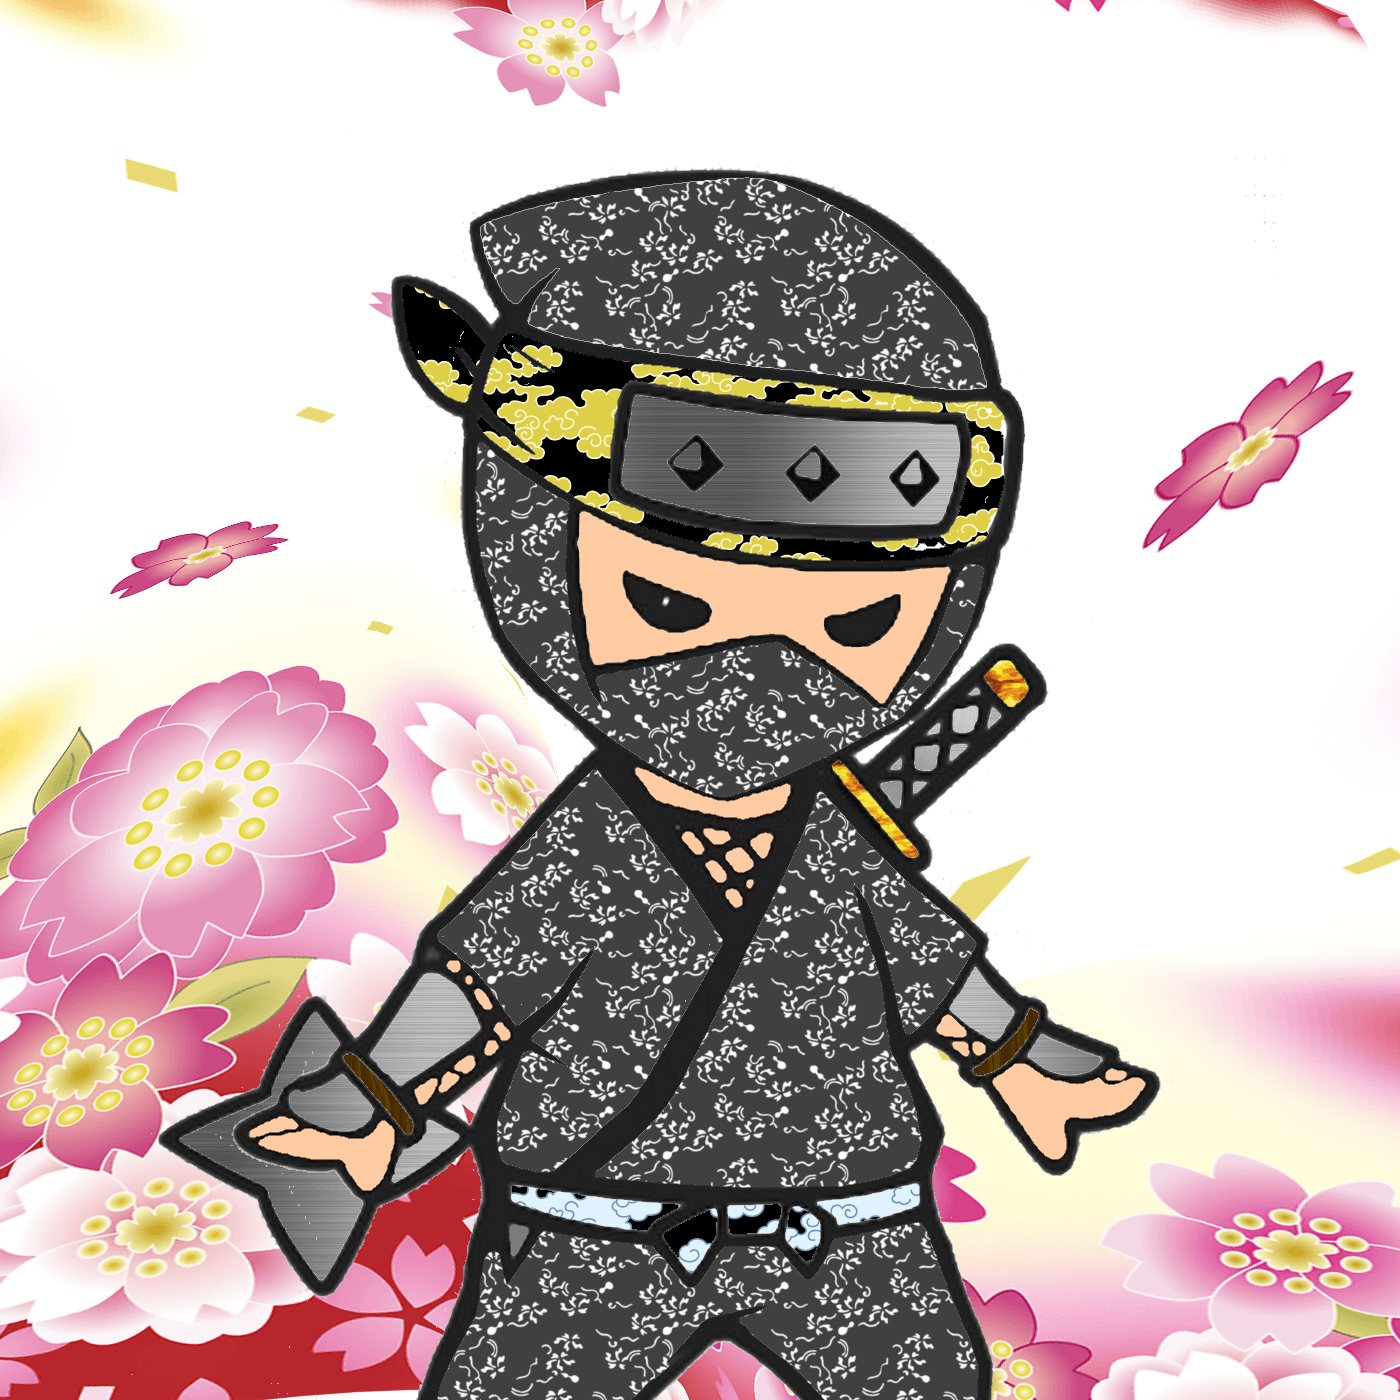 Crypto Ninja #001 secondary version spring 